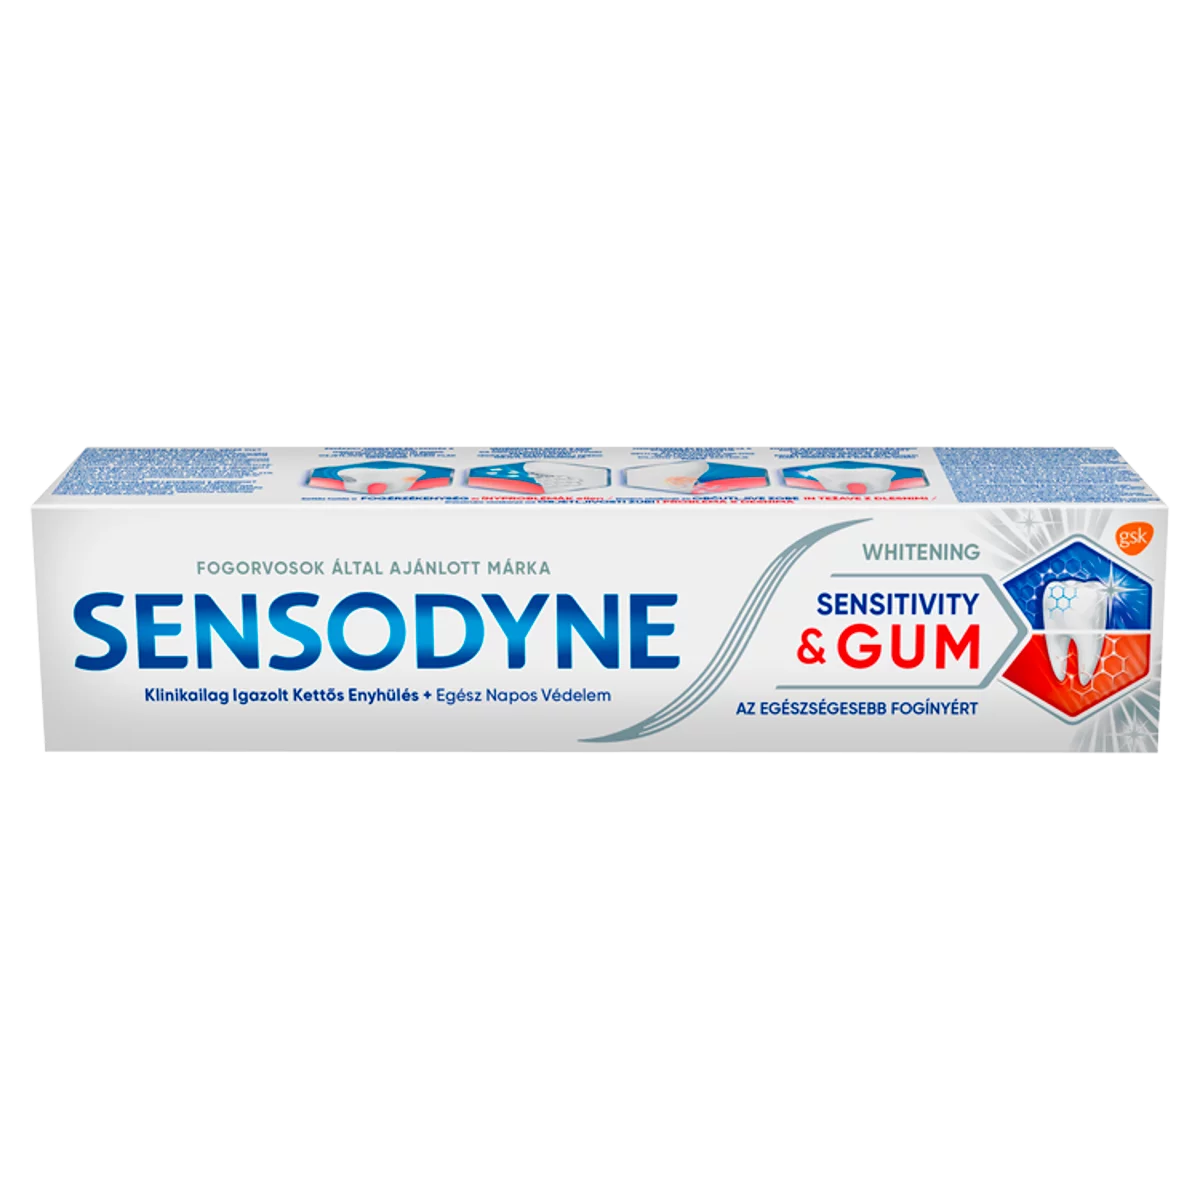 Sensodyne Sensitivity & Gum Whitening fogkrém 75 ml